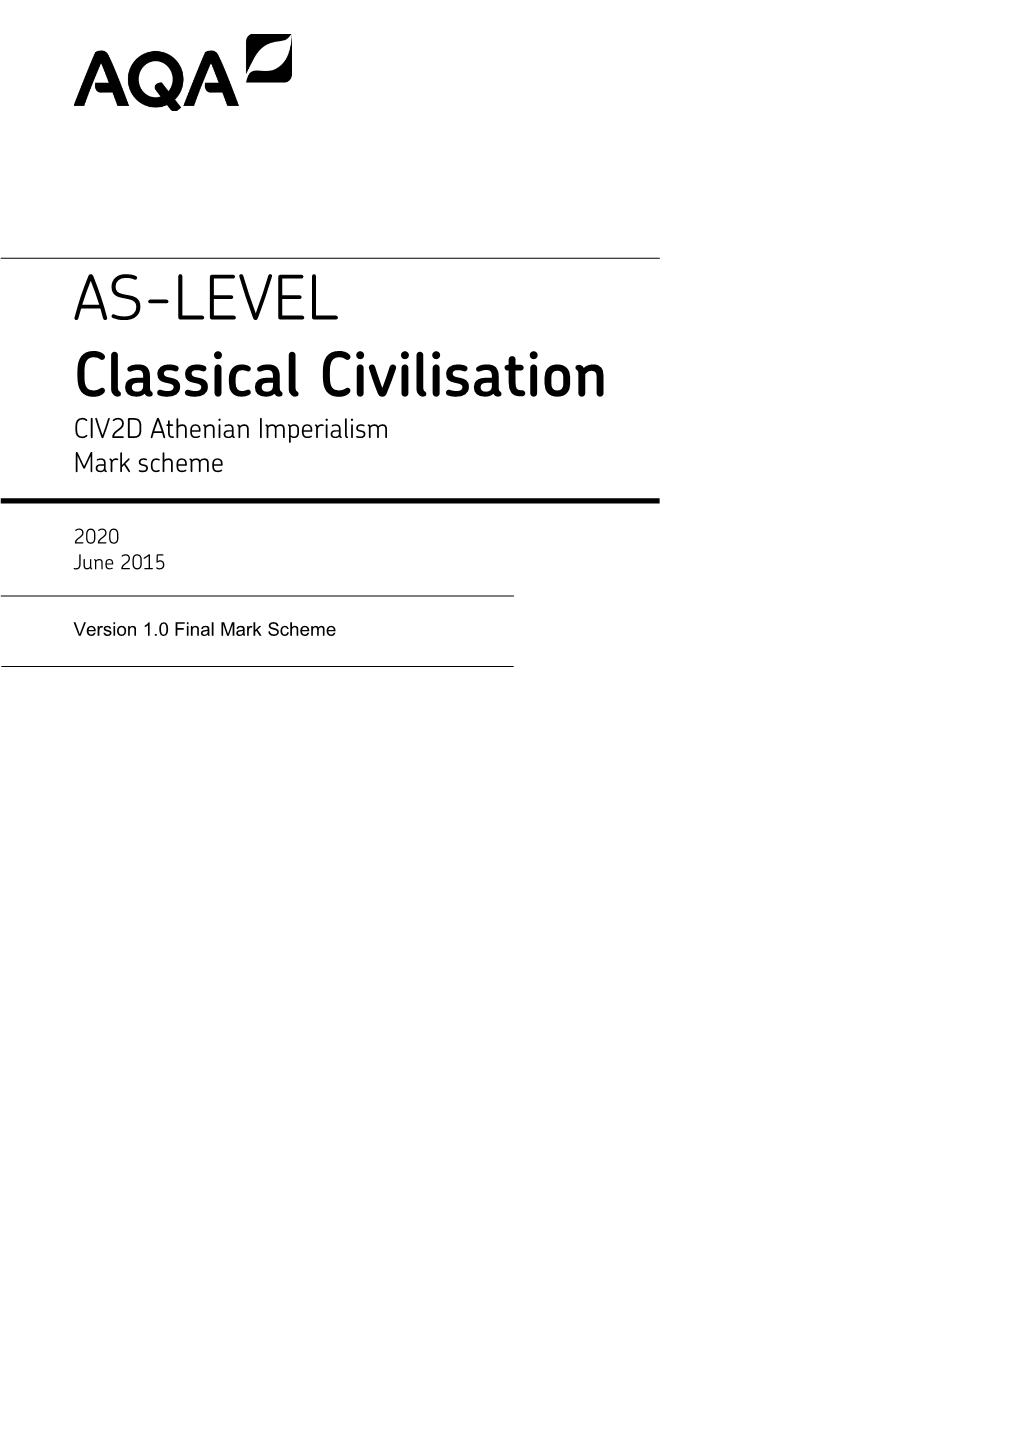 A-Level Classical Civilisation Mark Scheme Unit